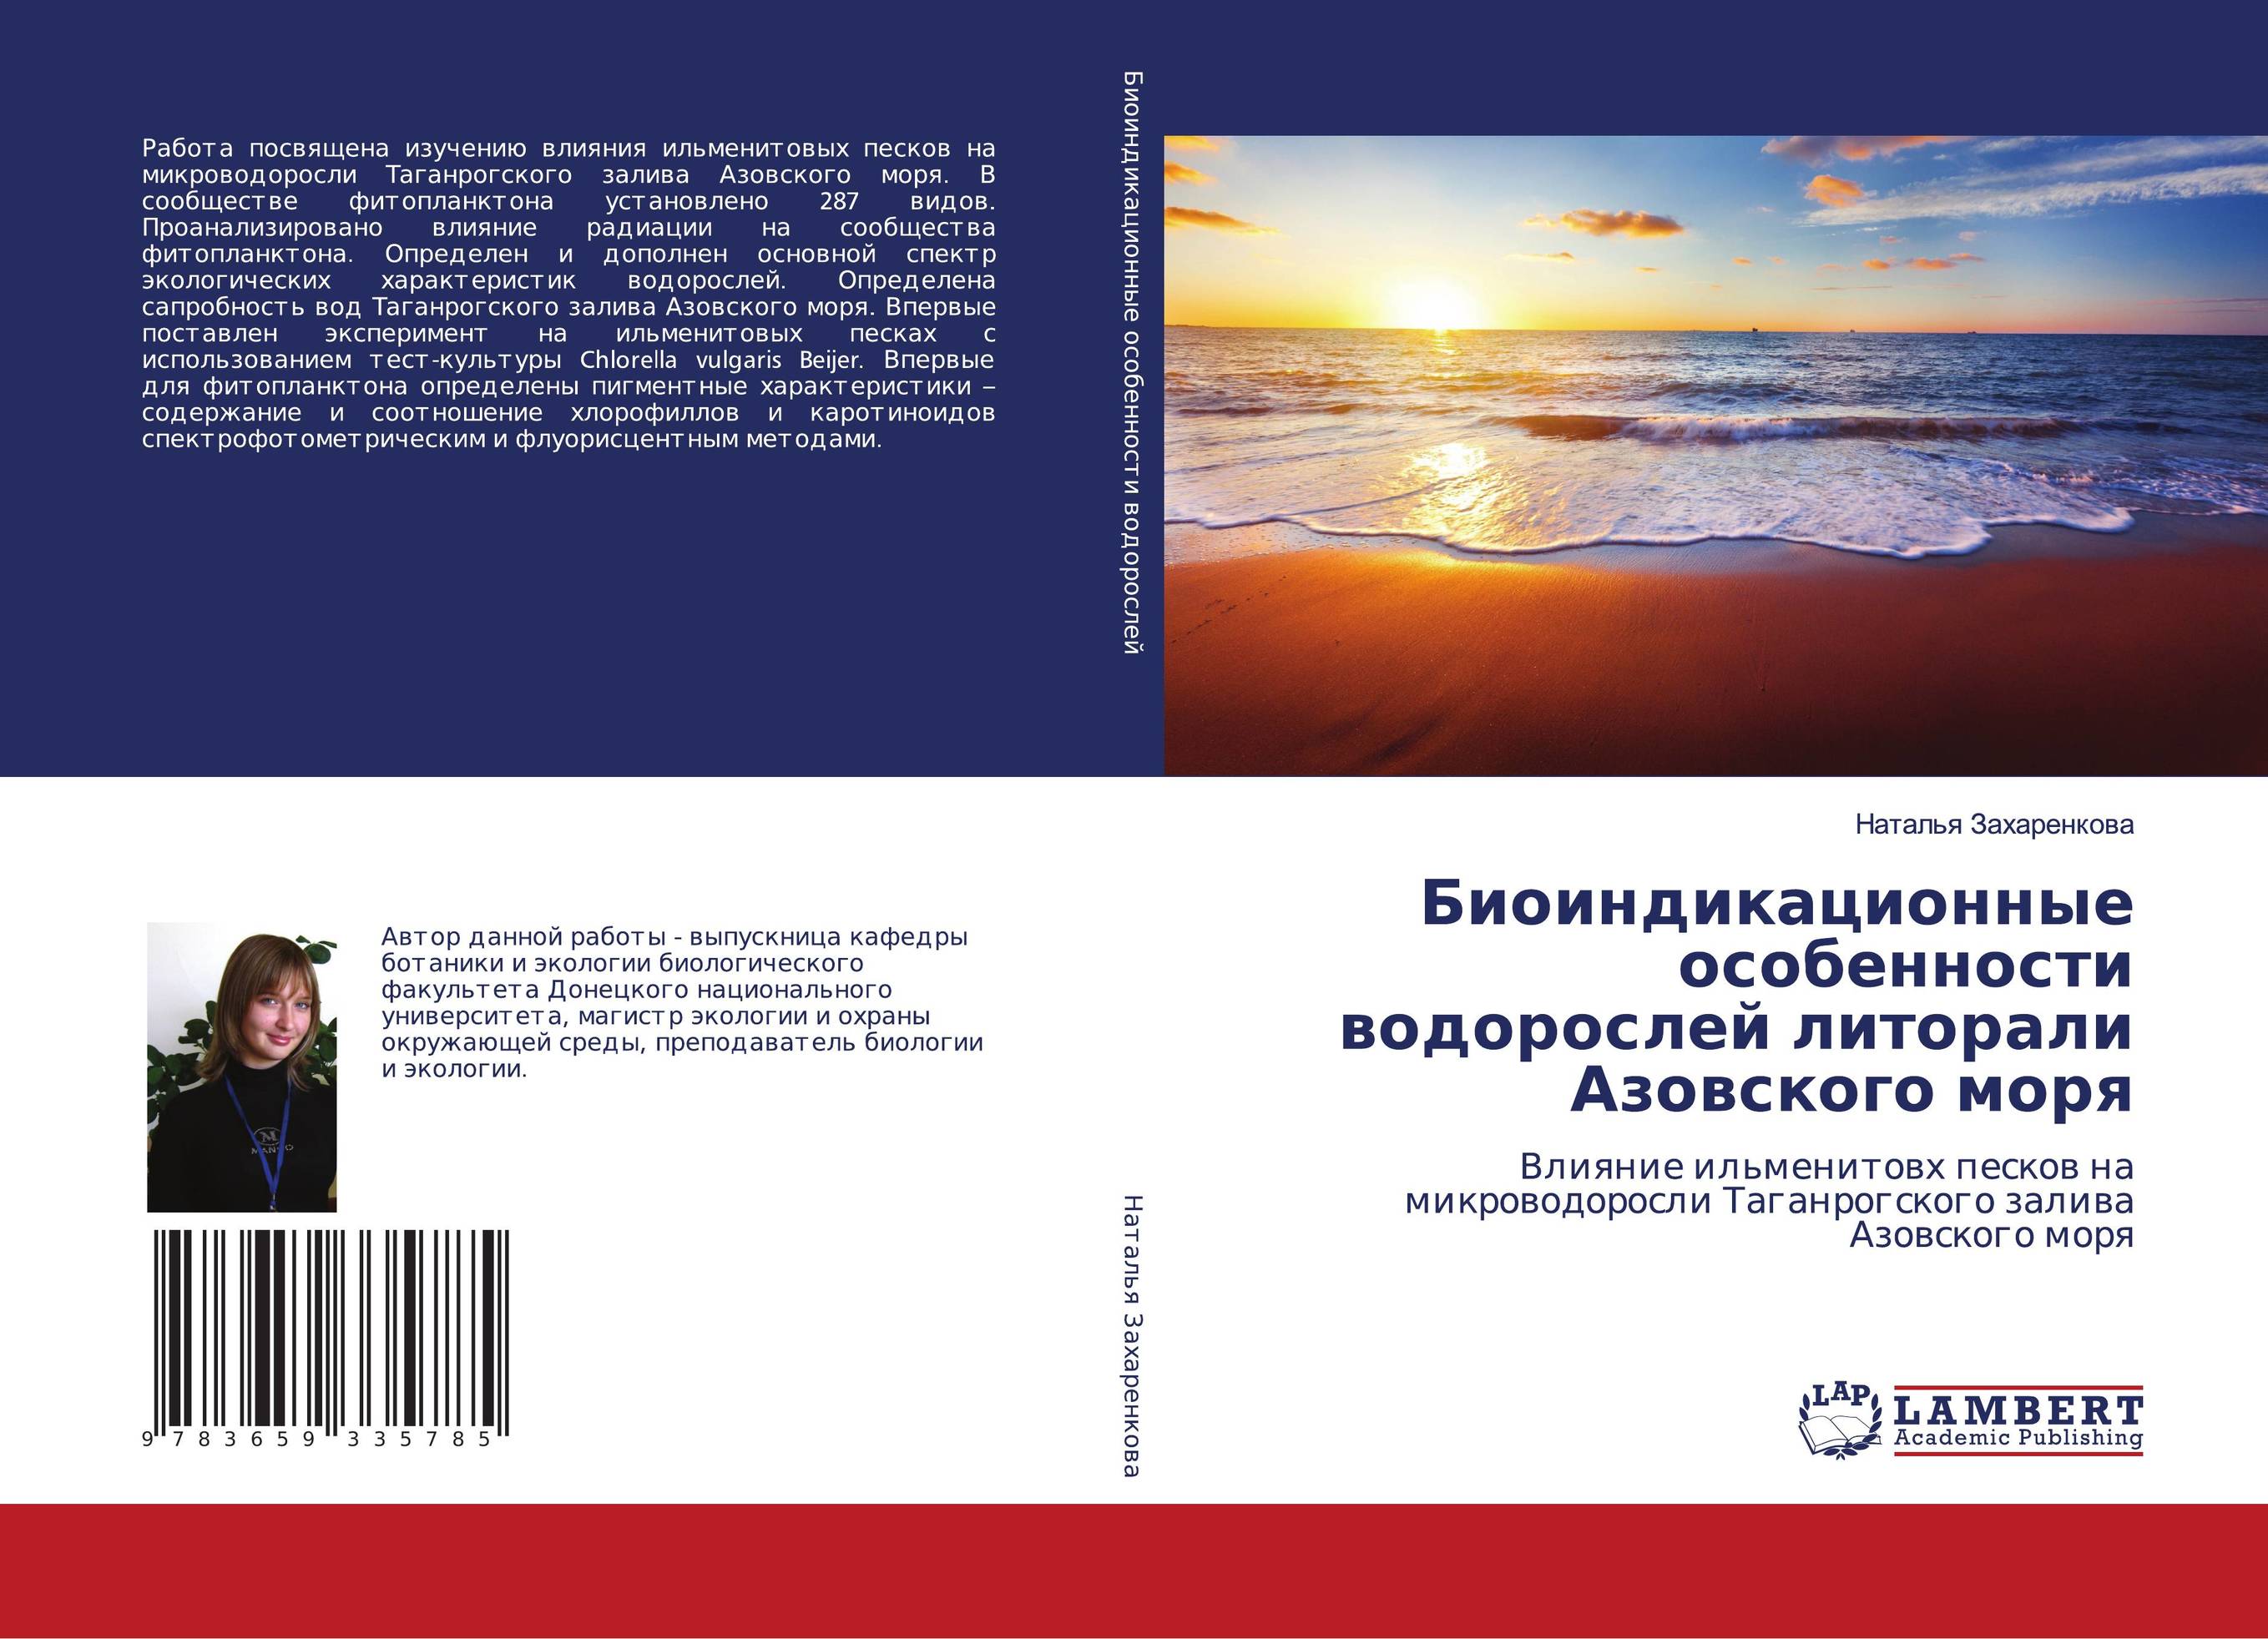 
        Биоиндикационные особенности водорослей литорали Азовского моря. Влияние ильменитовх песков на микроводоросли Таганрогского залива Азовского моря.
      